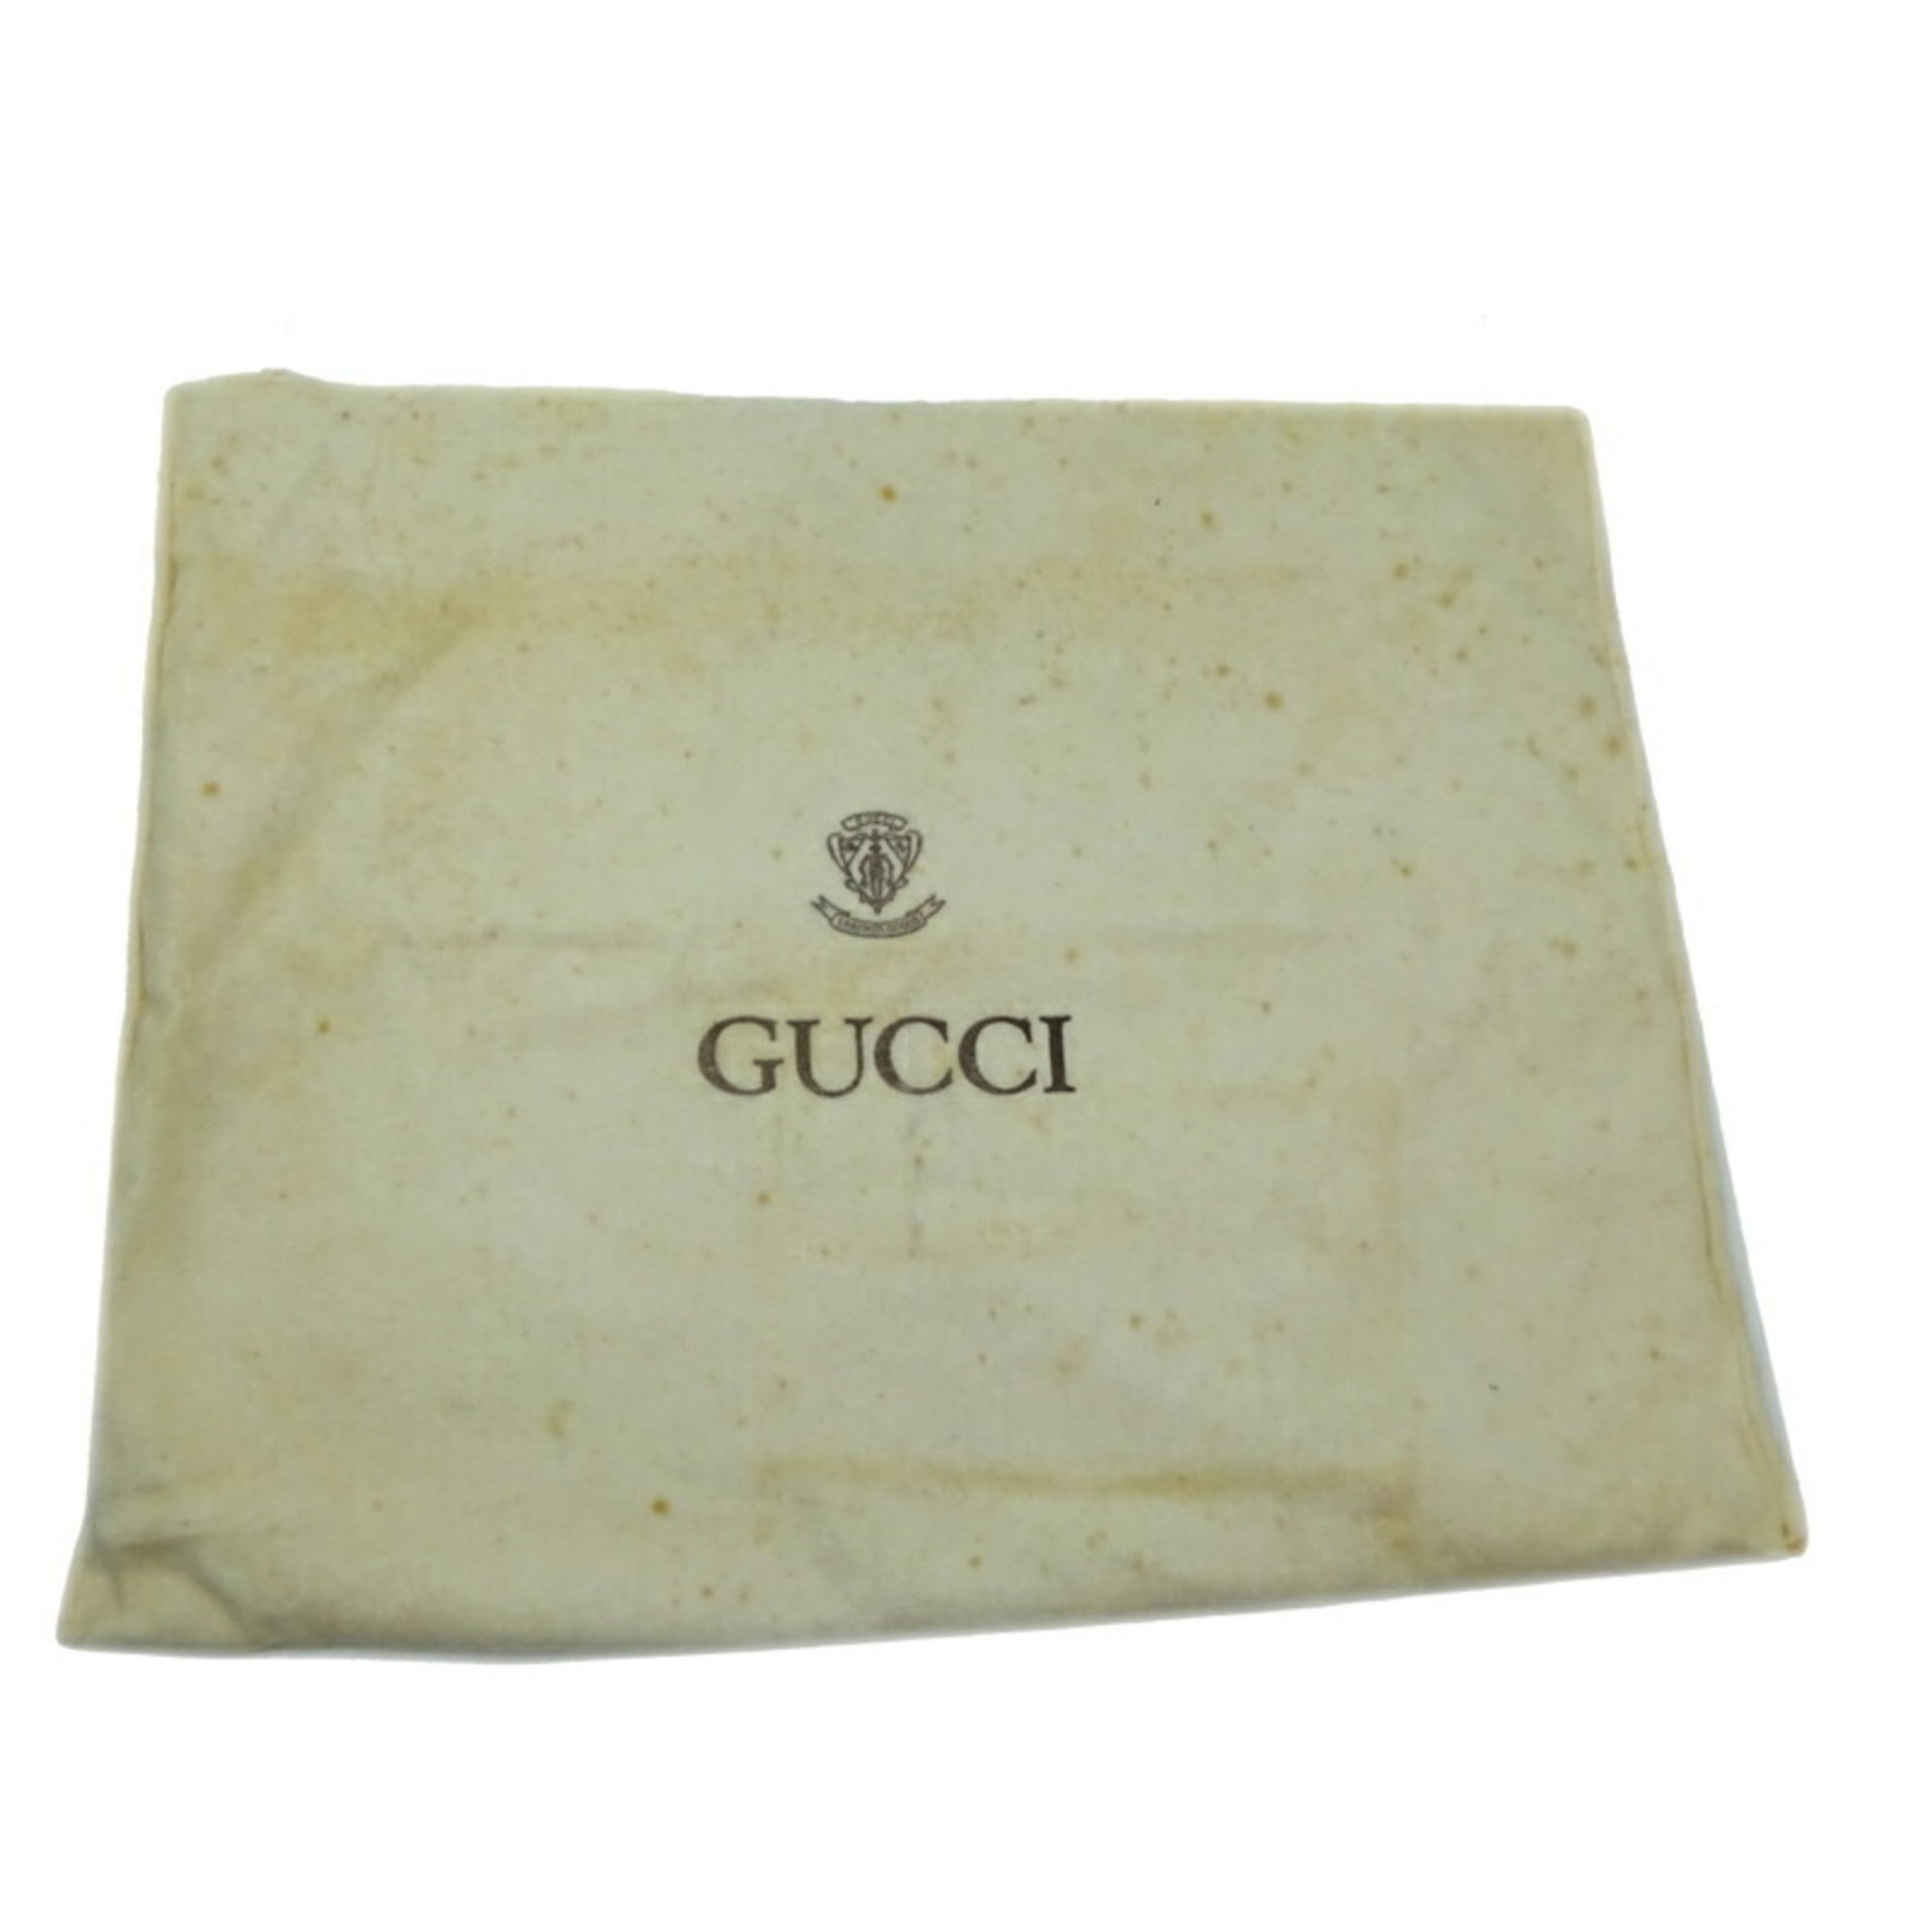 Gucci Shoulder Women's Bag 388929 Leather Black